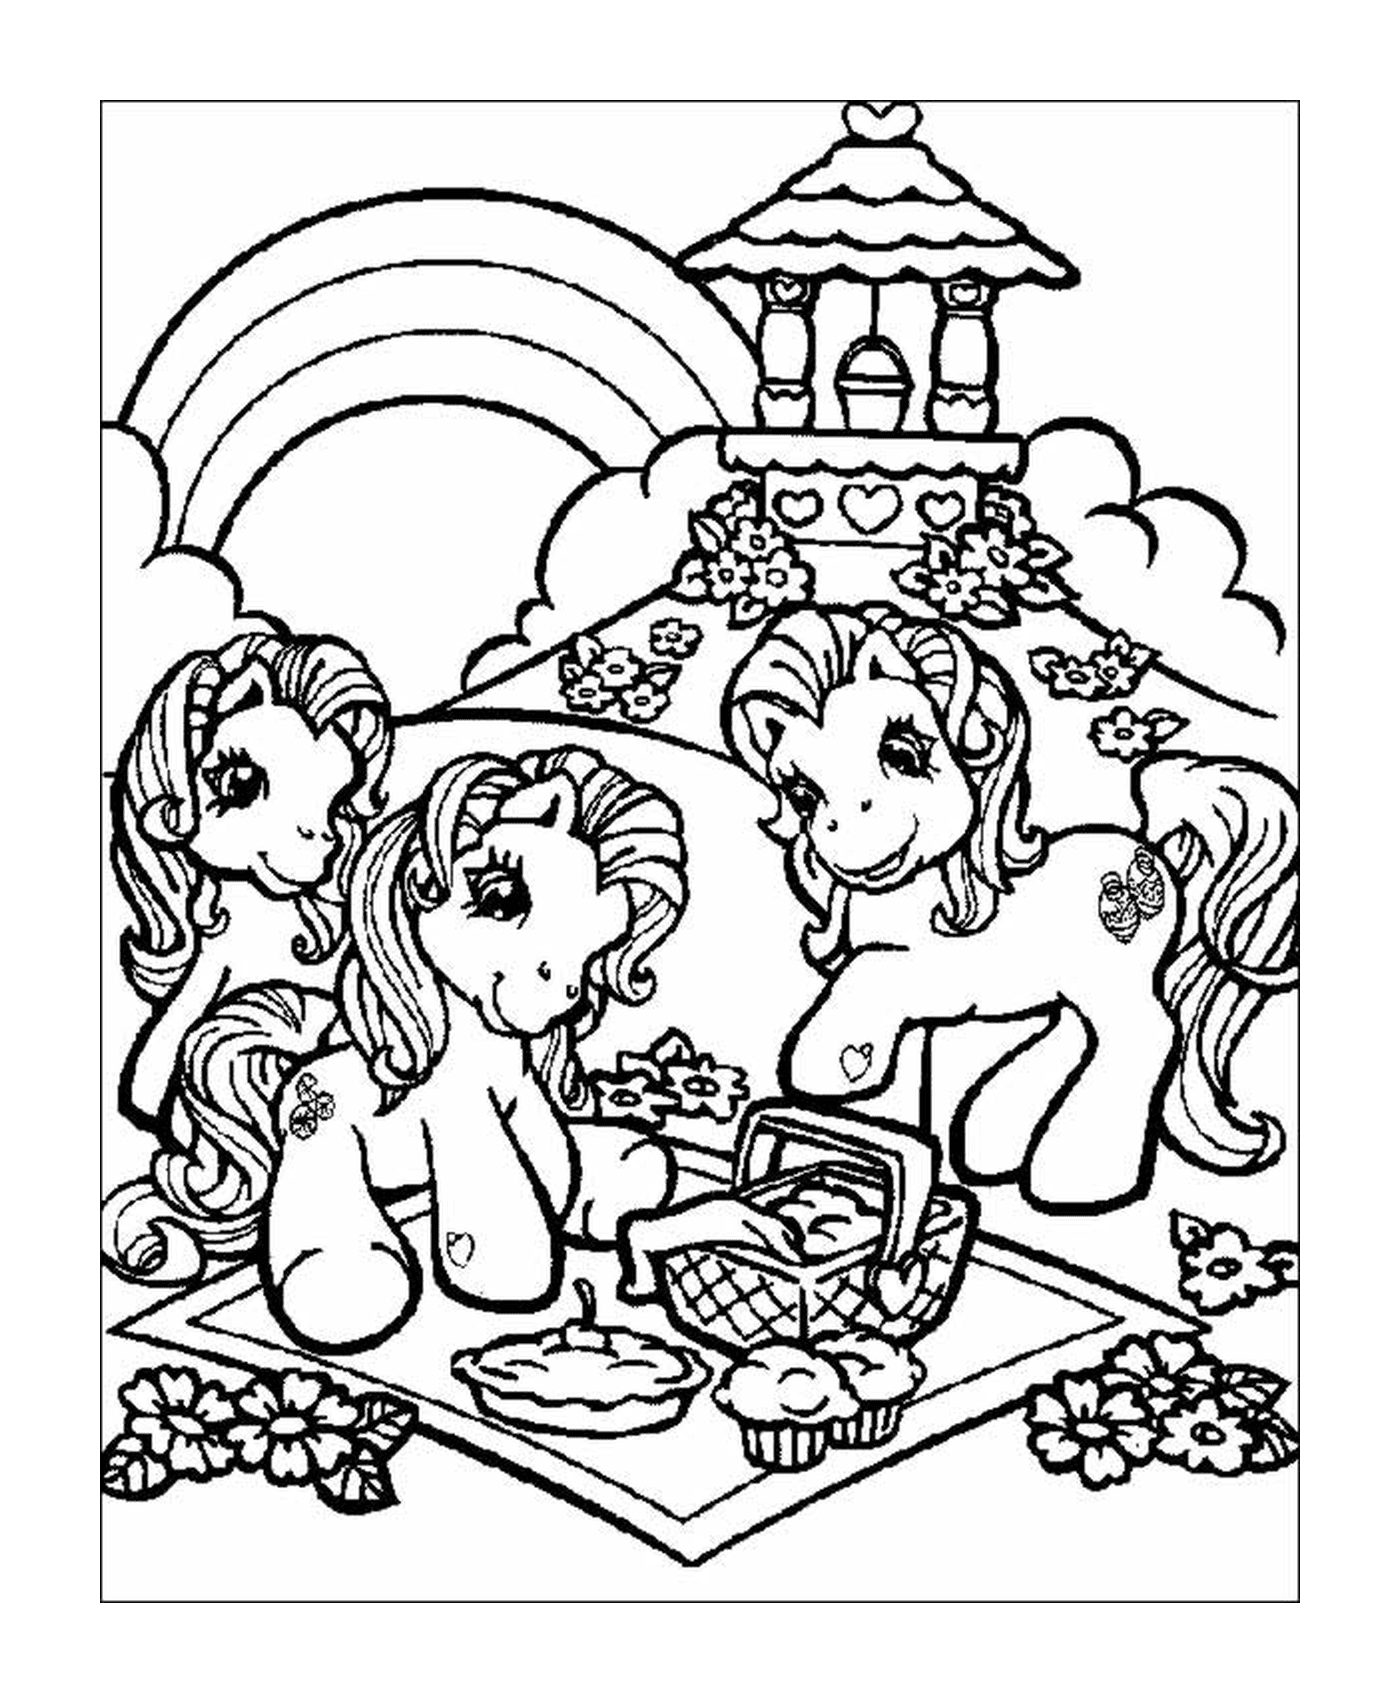  Mein kleiner Pony, glückliches Picknick mit Freunden 